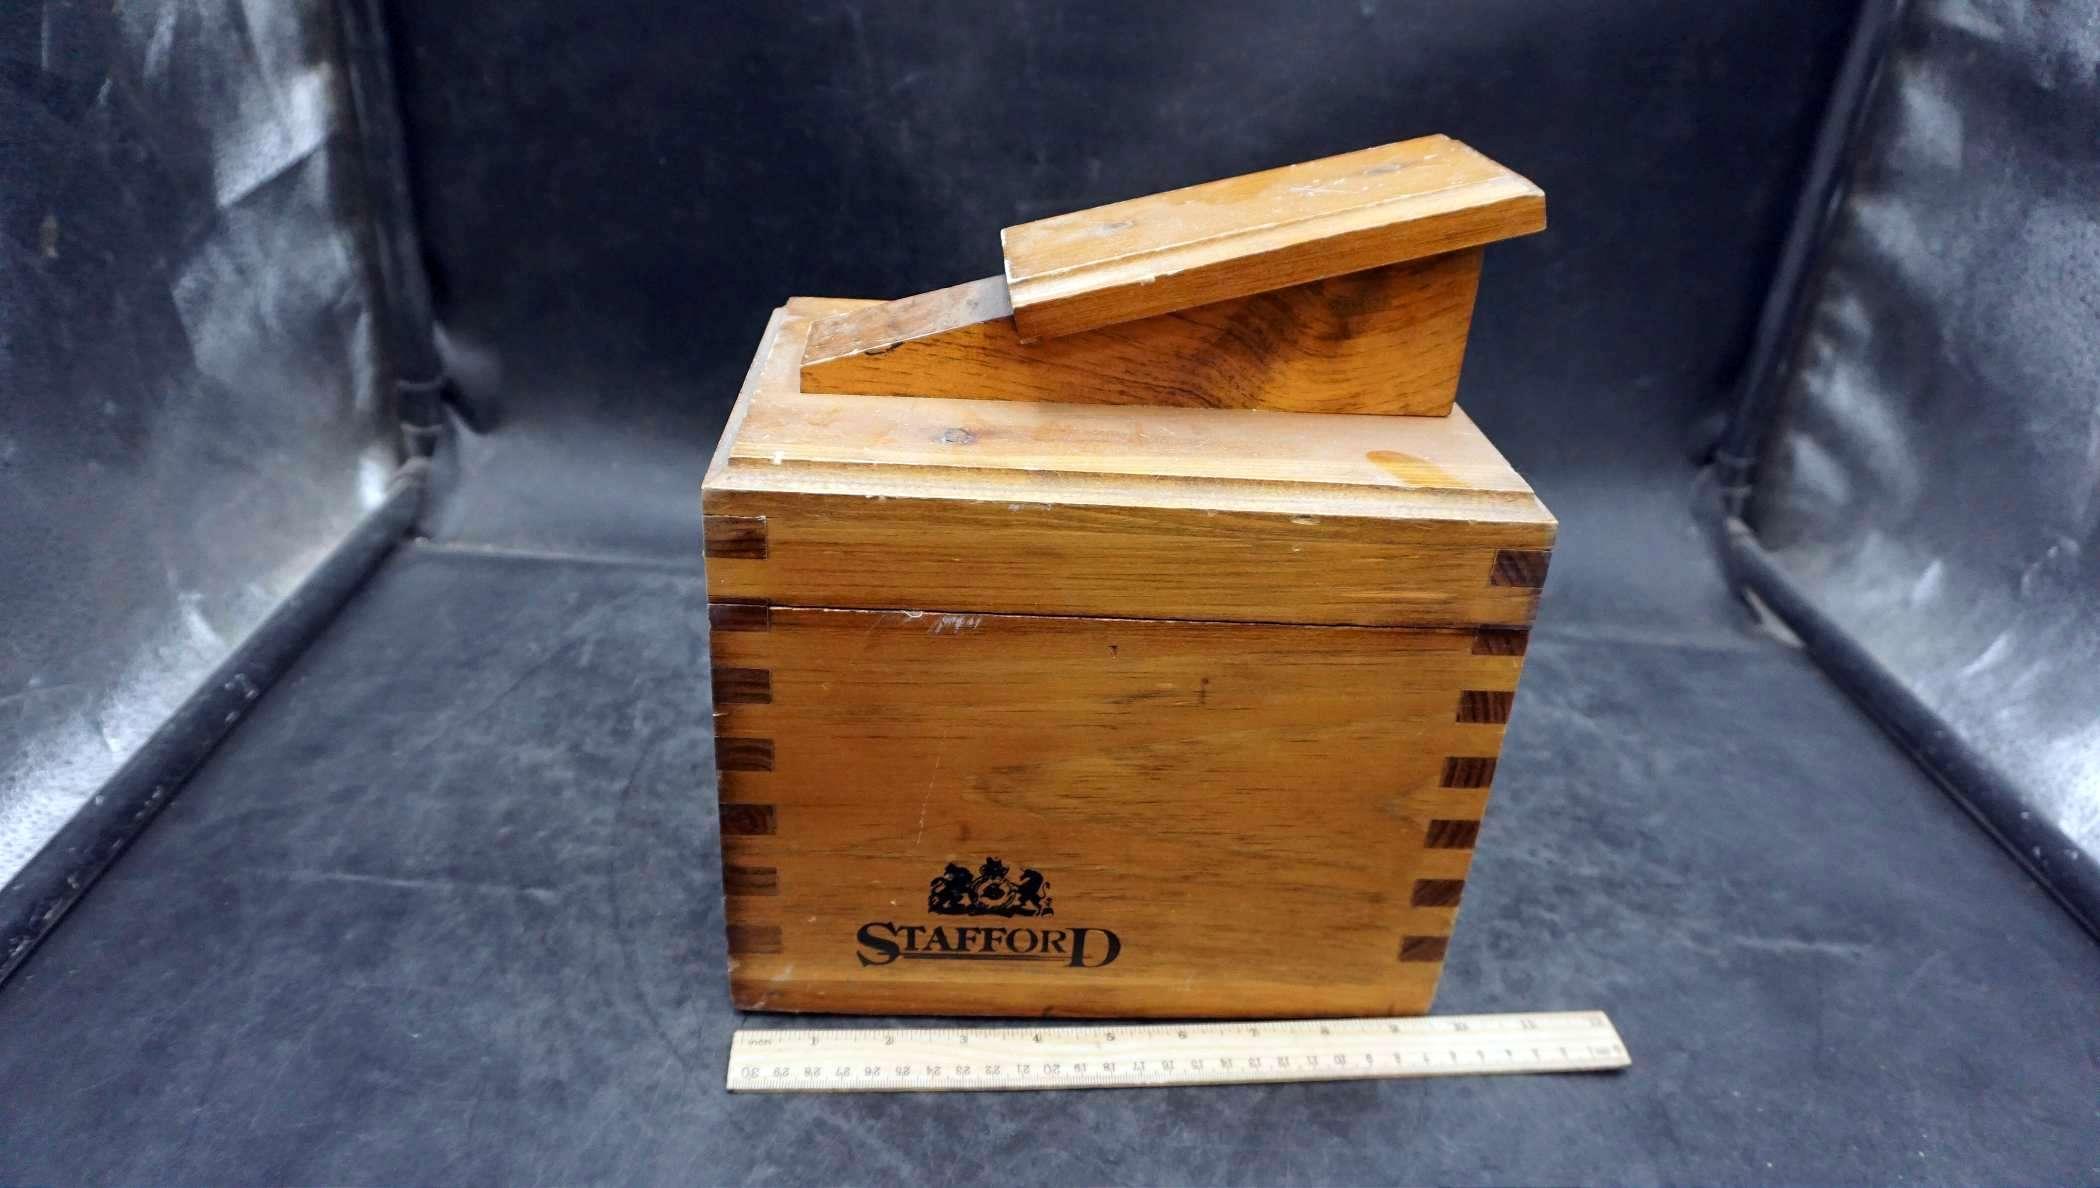 Stafford Dovetail Wood Shoe Shine Box